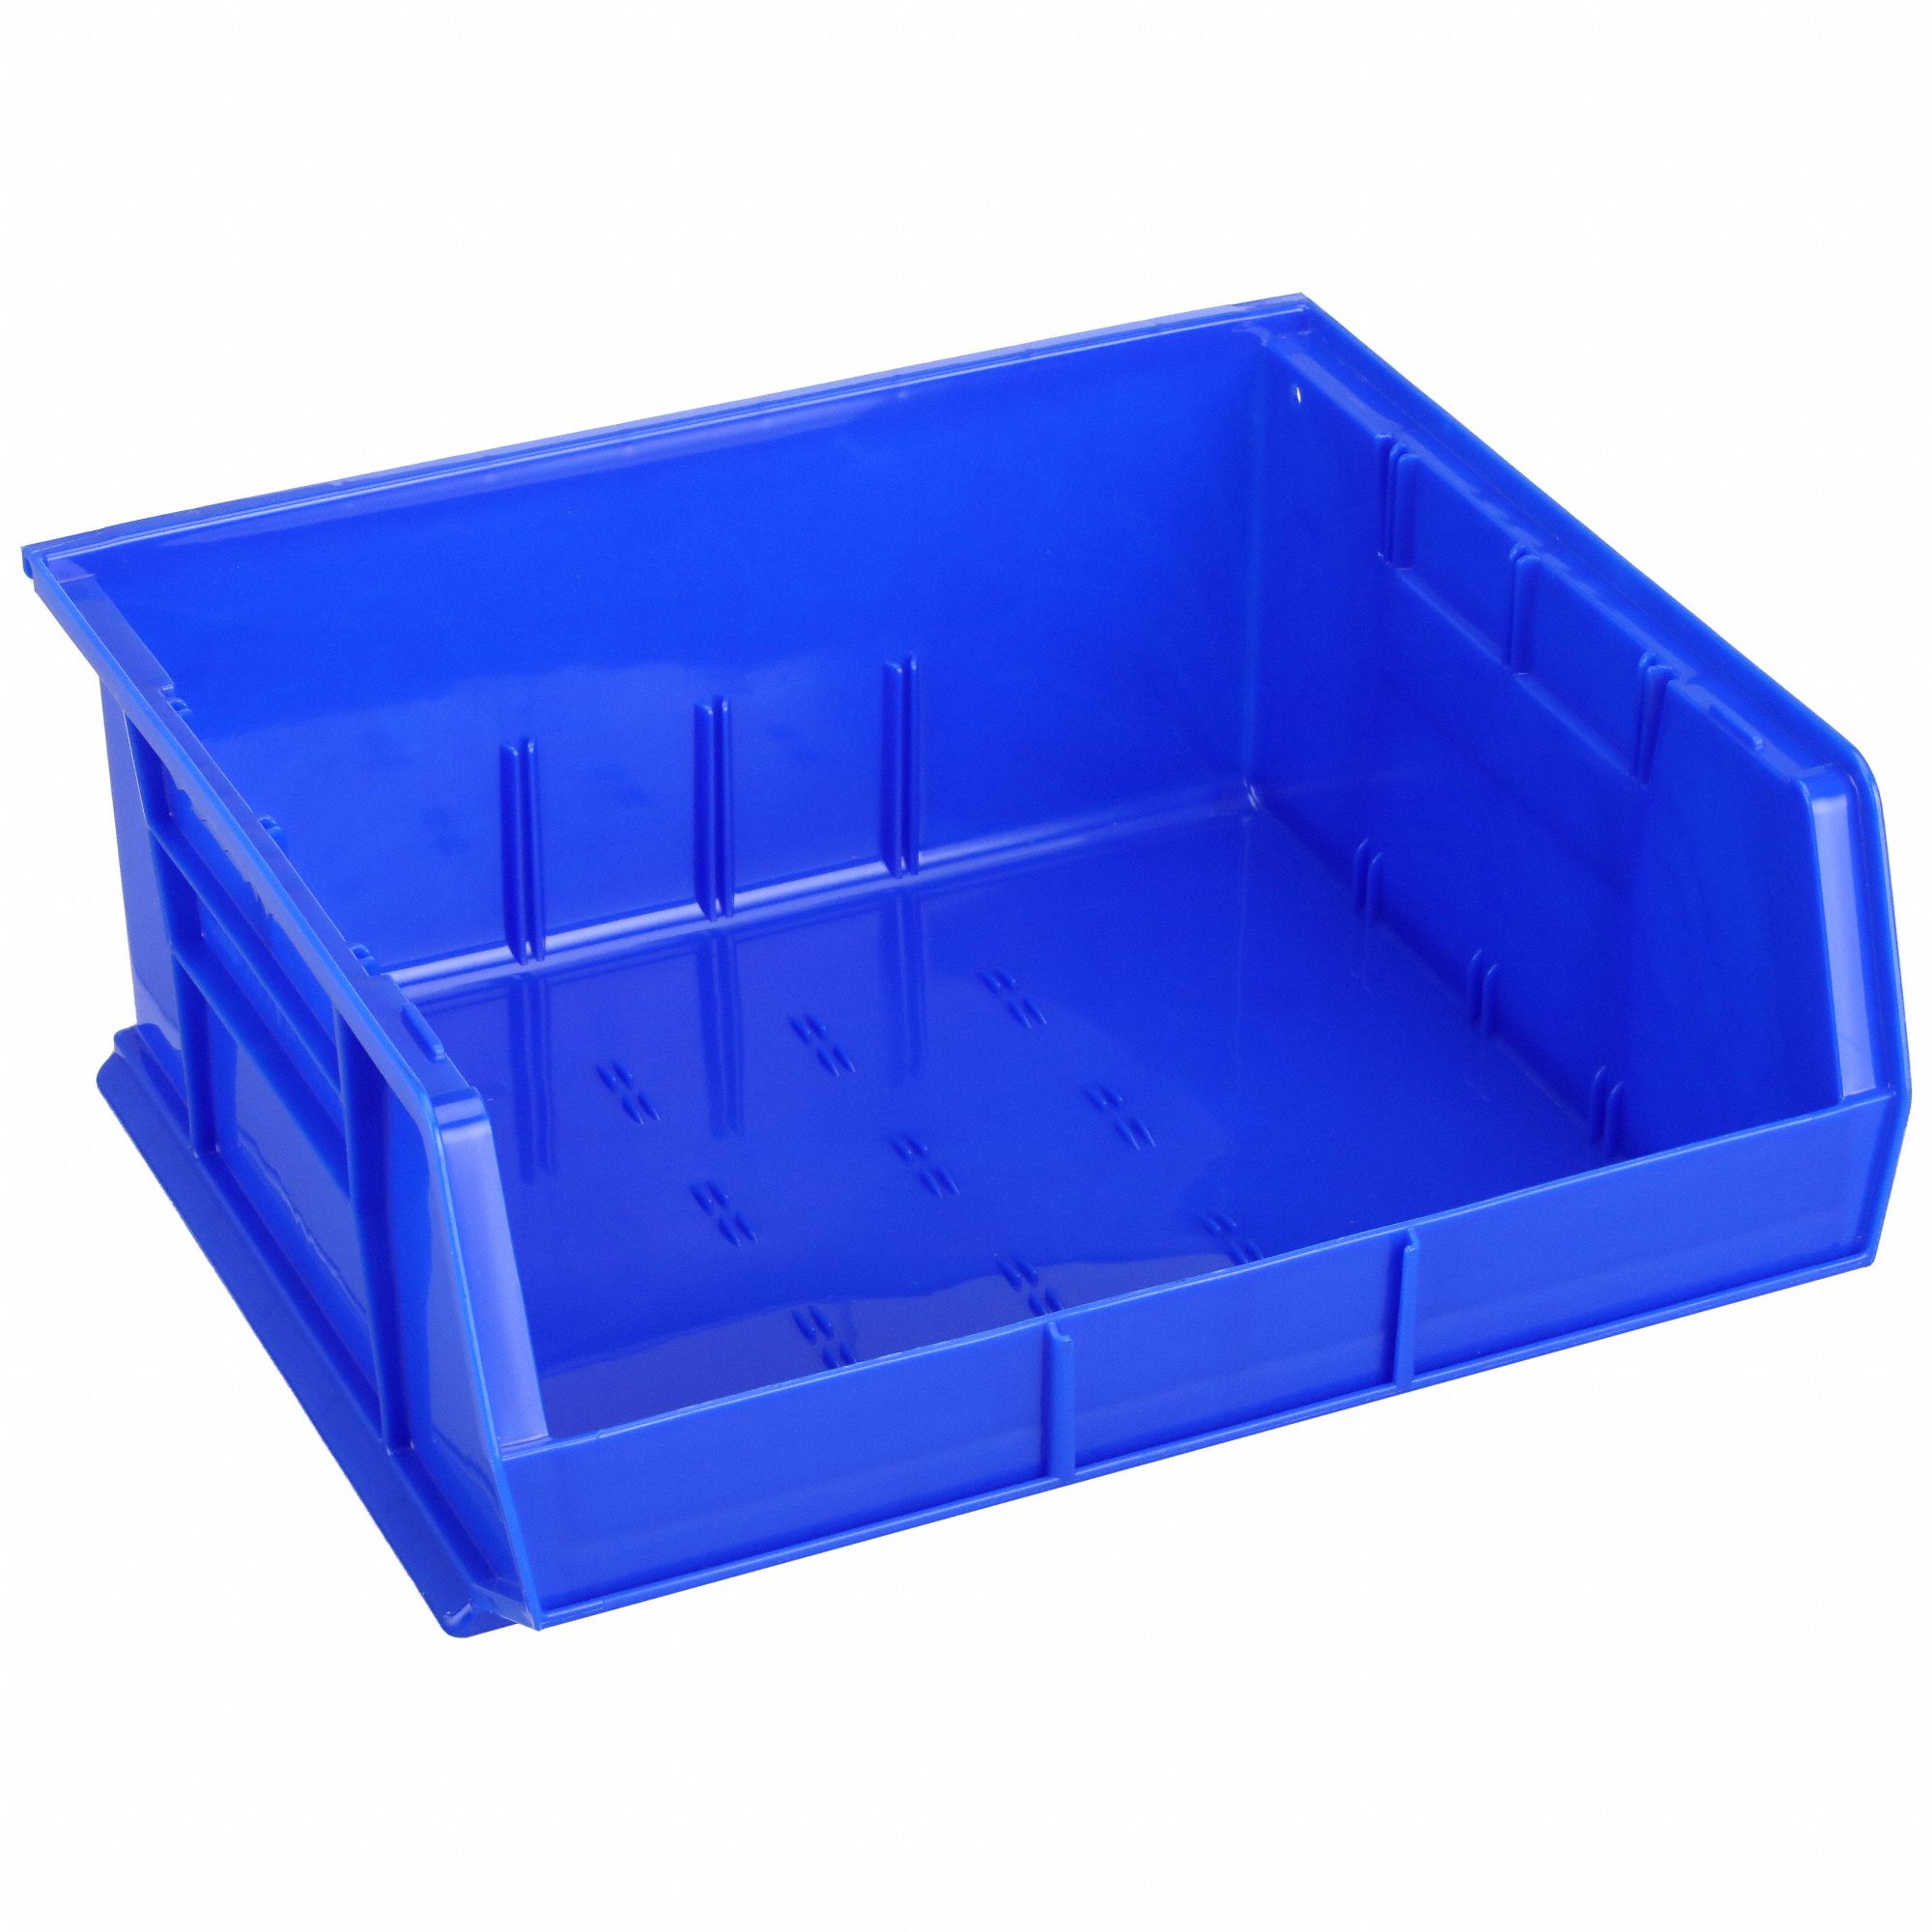 Akro-Mils Bins Unbreakable/Waterproof 16 x14-1/2 x7 Blue 30250B, 1